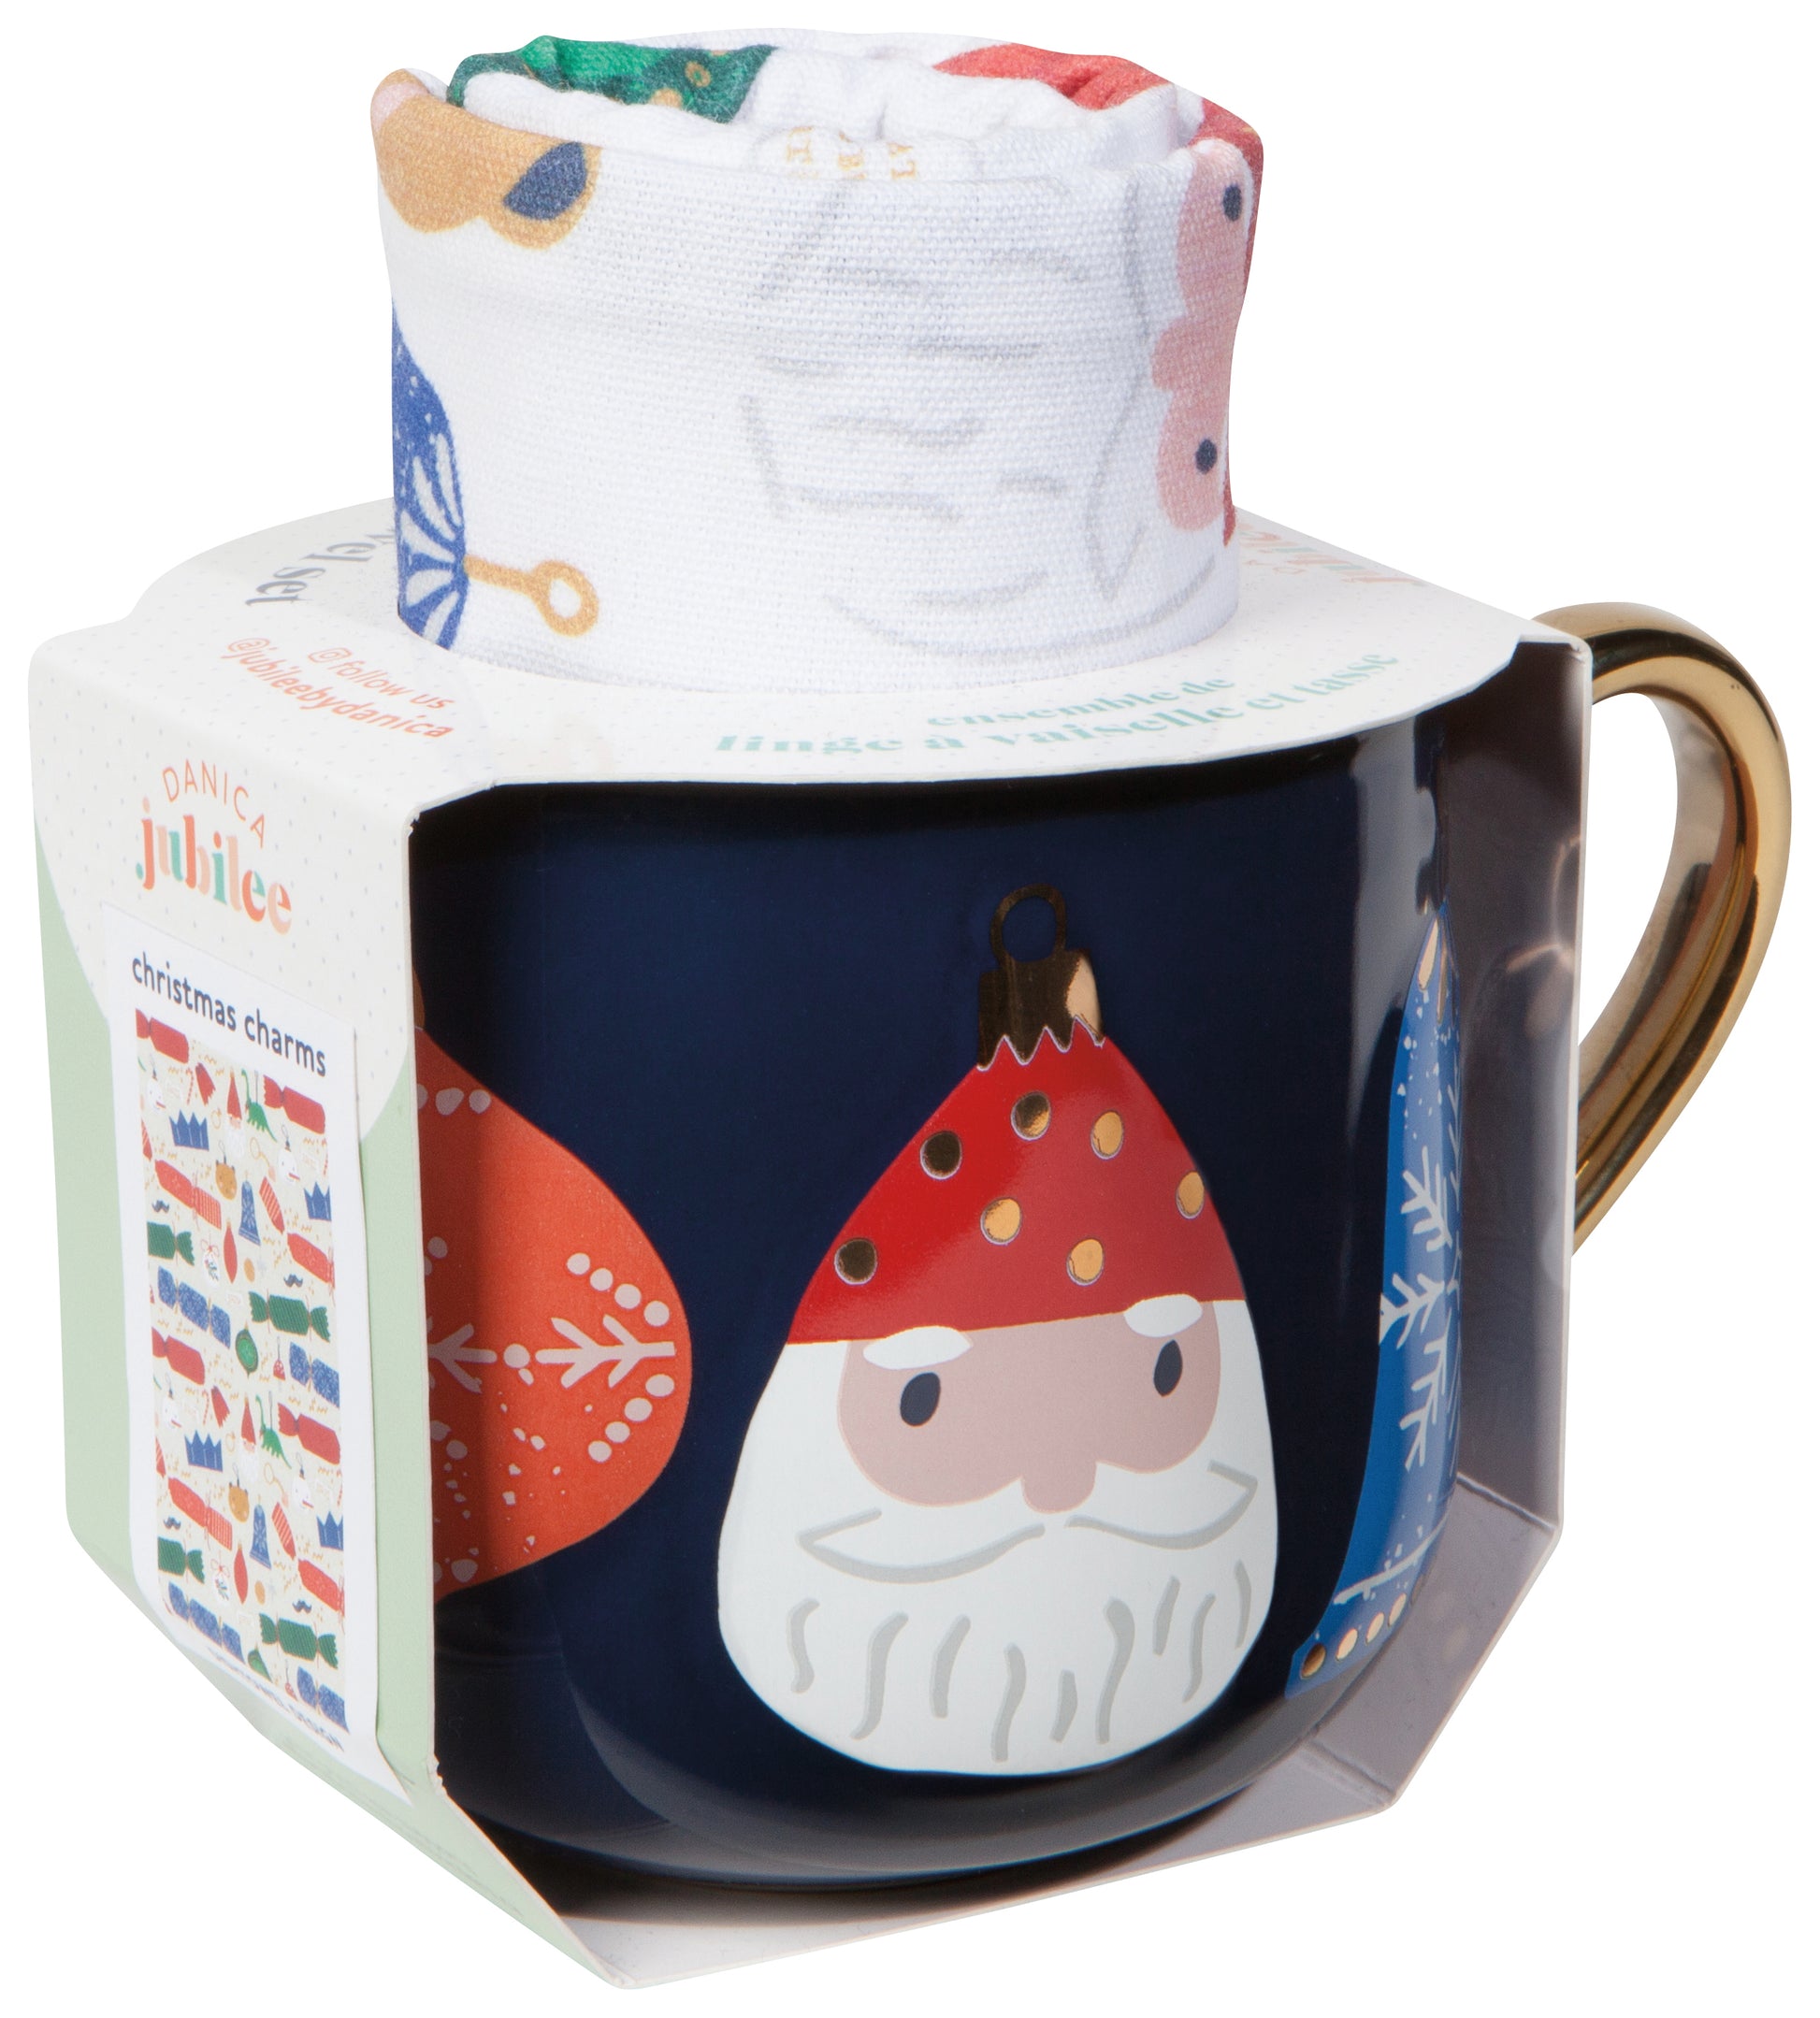 Mug & Towel Gift Set